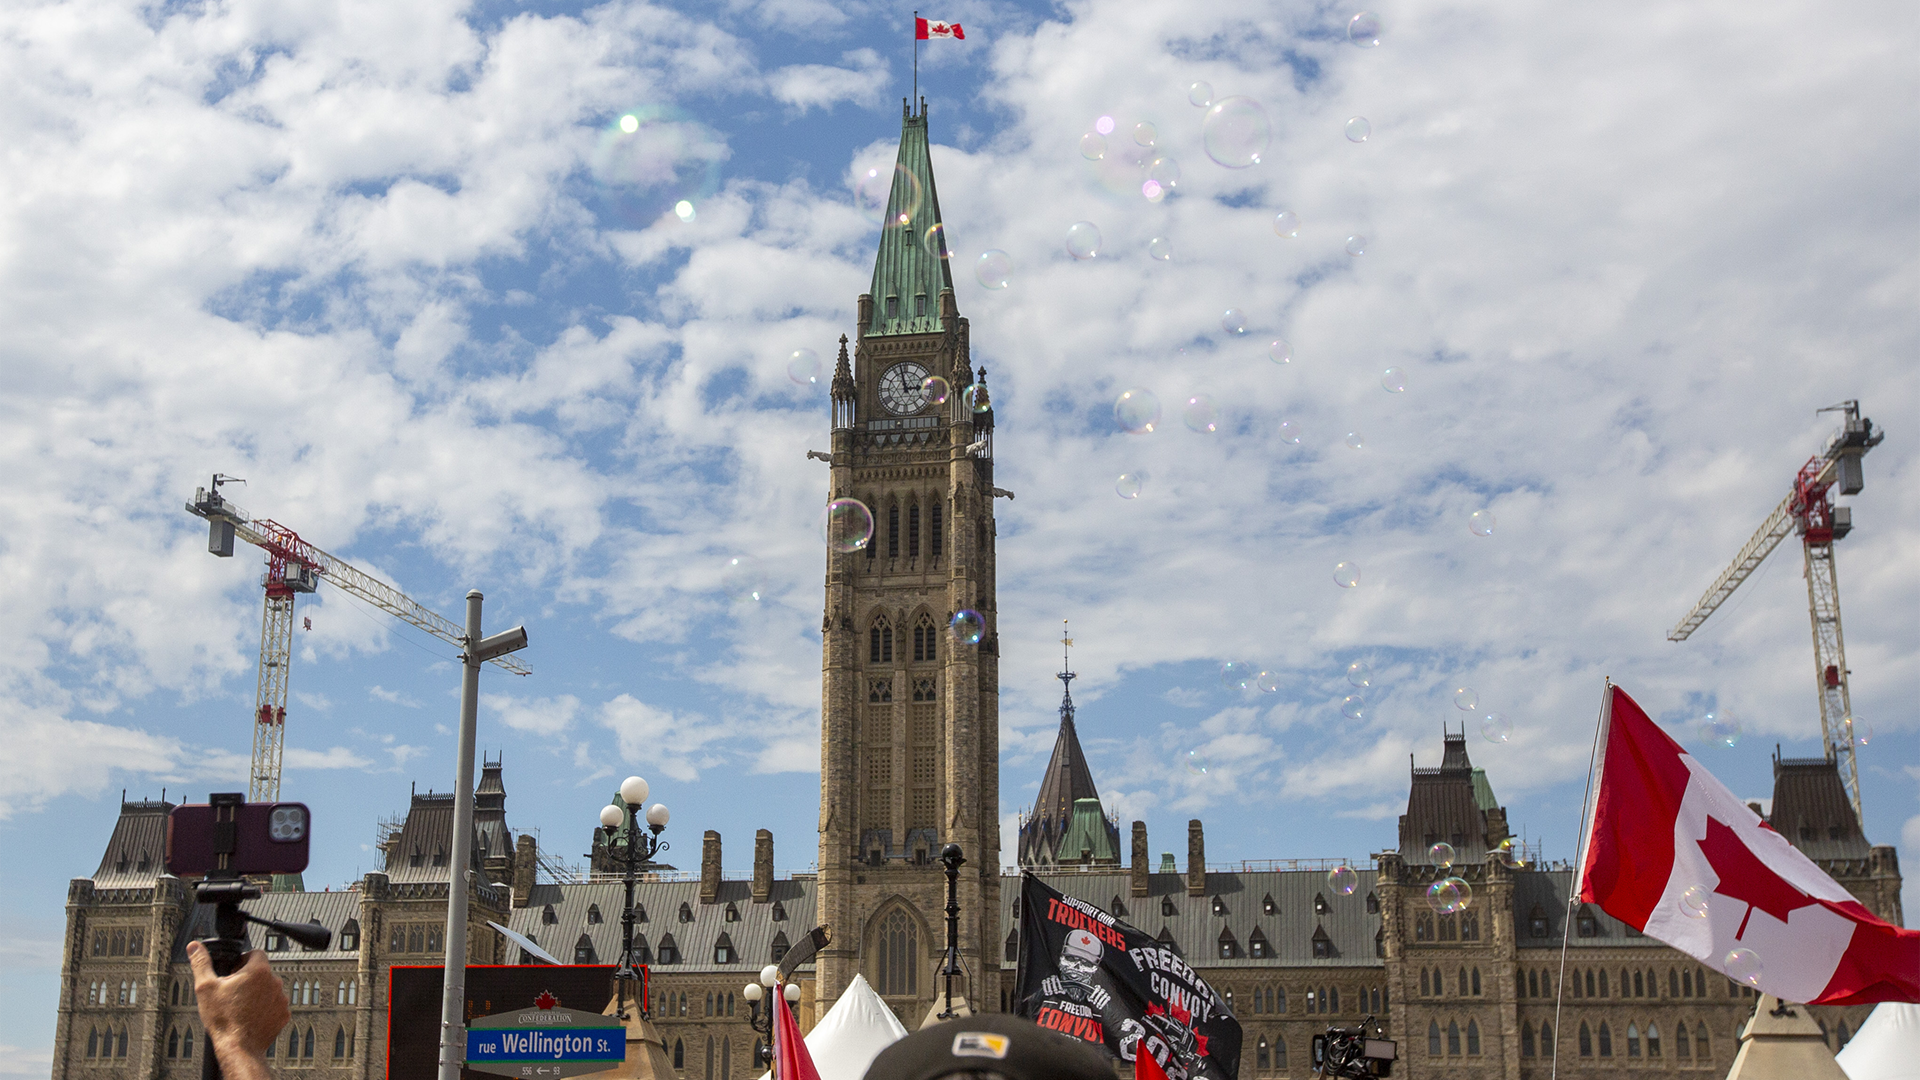 Festivités et manifestations se sont succédées pour la fête du Canada vendredi.